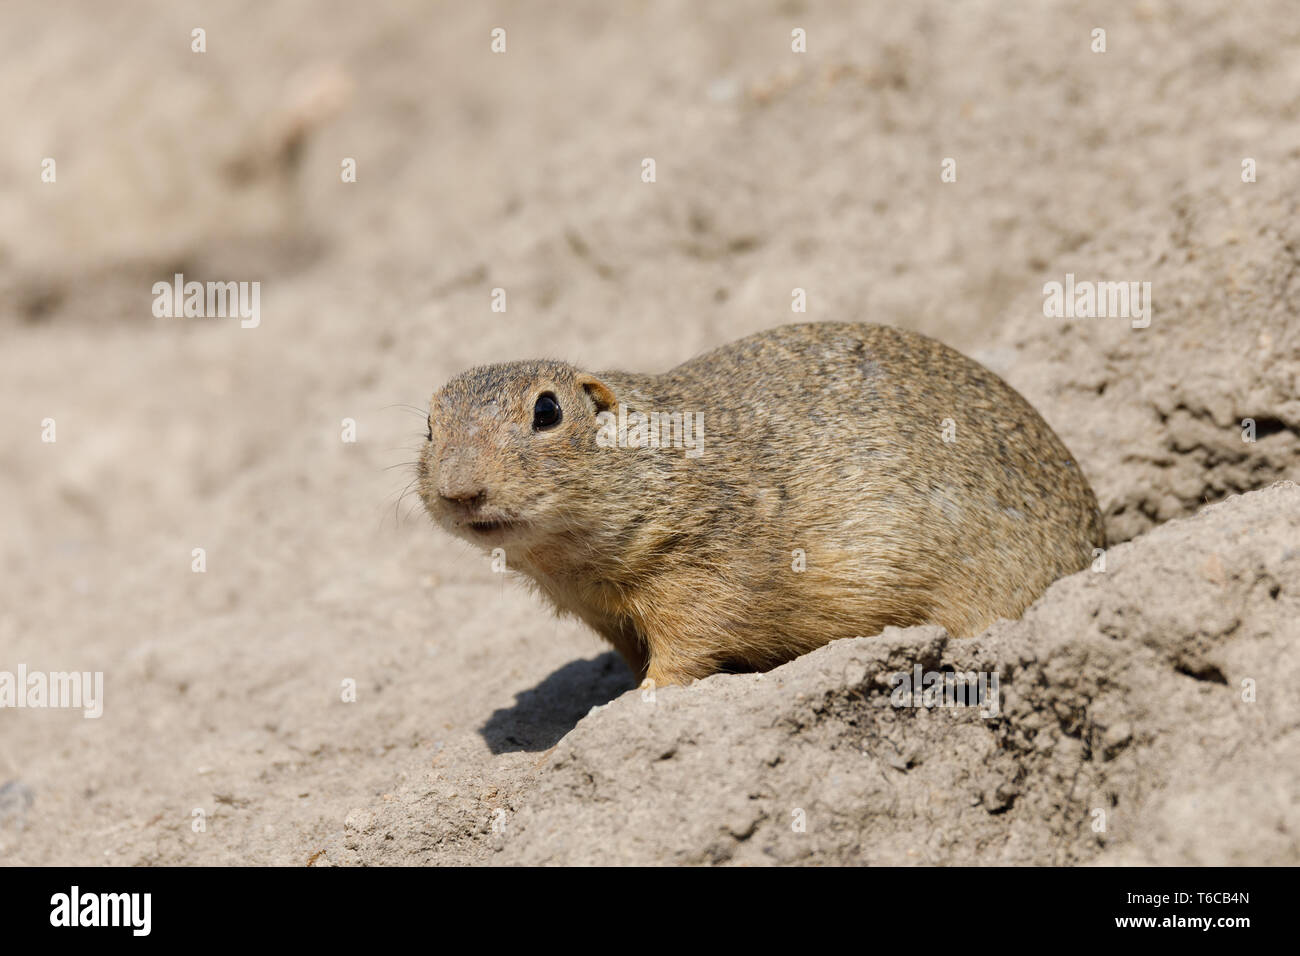 European ground squirrel (Spermophilus citellus) Stock Photo